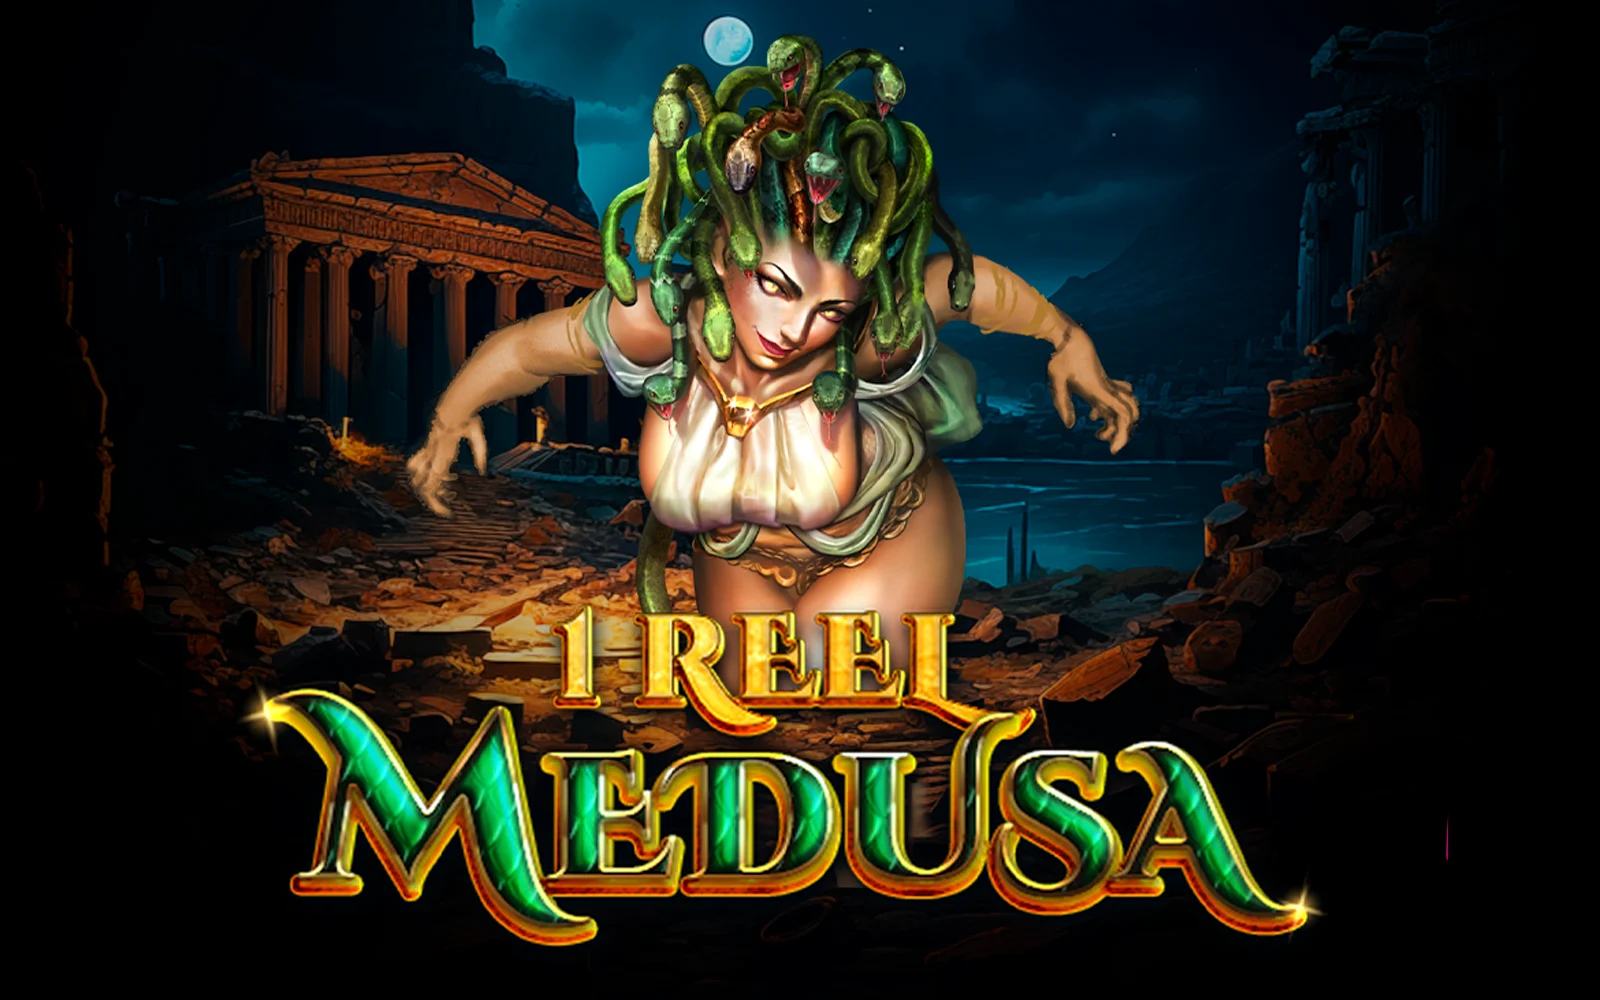 Starcasino.be online casino üzerinden 1 Reel - Medusa™ oynayın